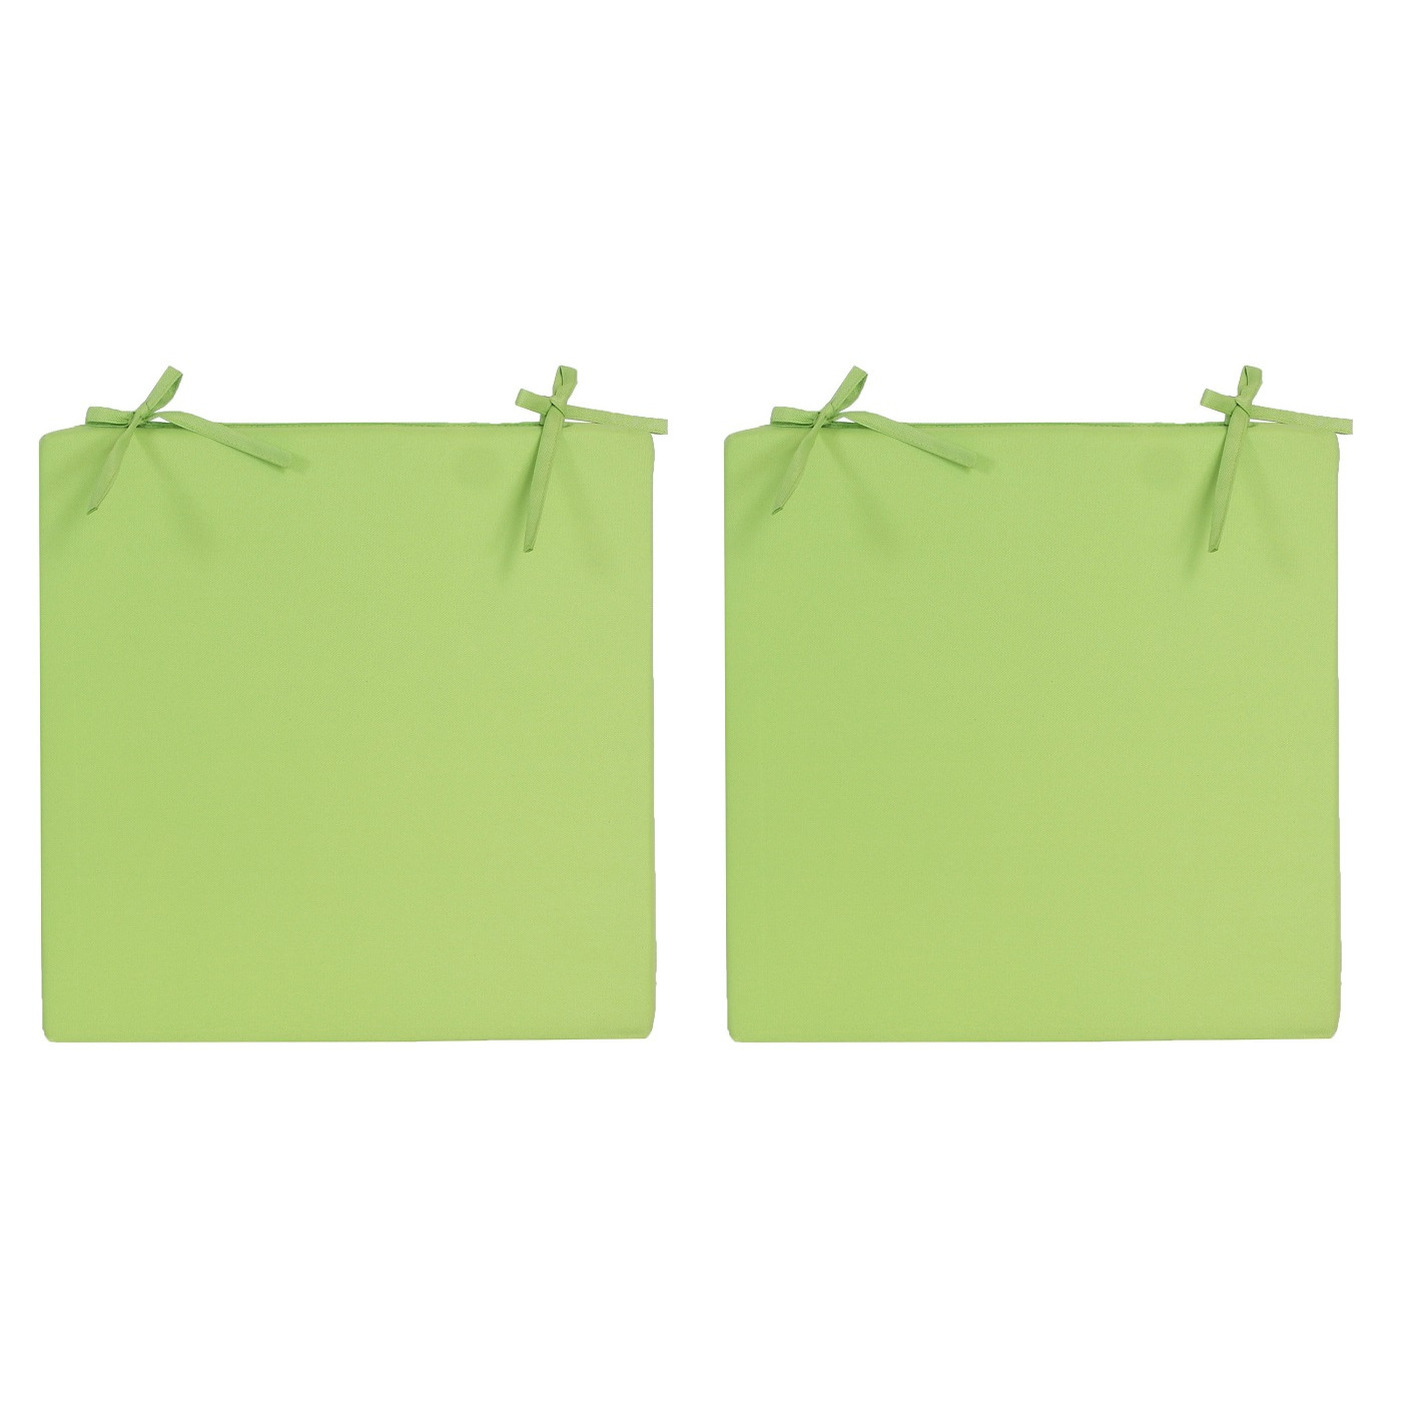 6x Stoelkussens voor binnen en buiten in de kleur groen 40 x 40 cm Tuinkussens voor buitenstoelen.